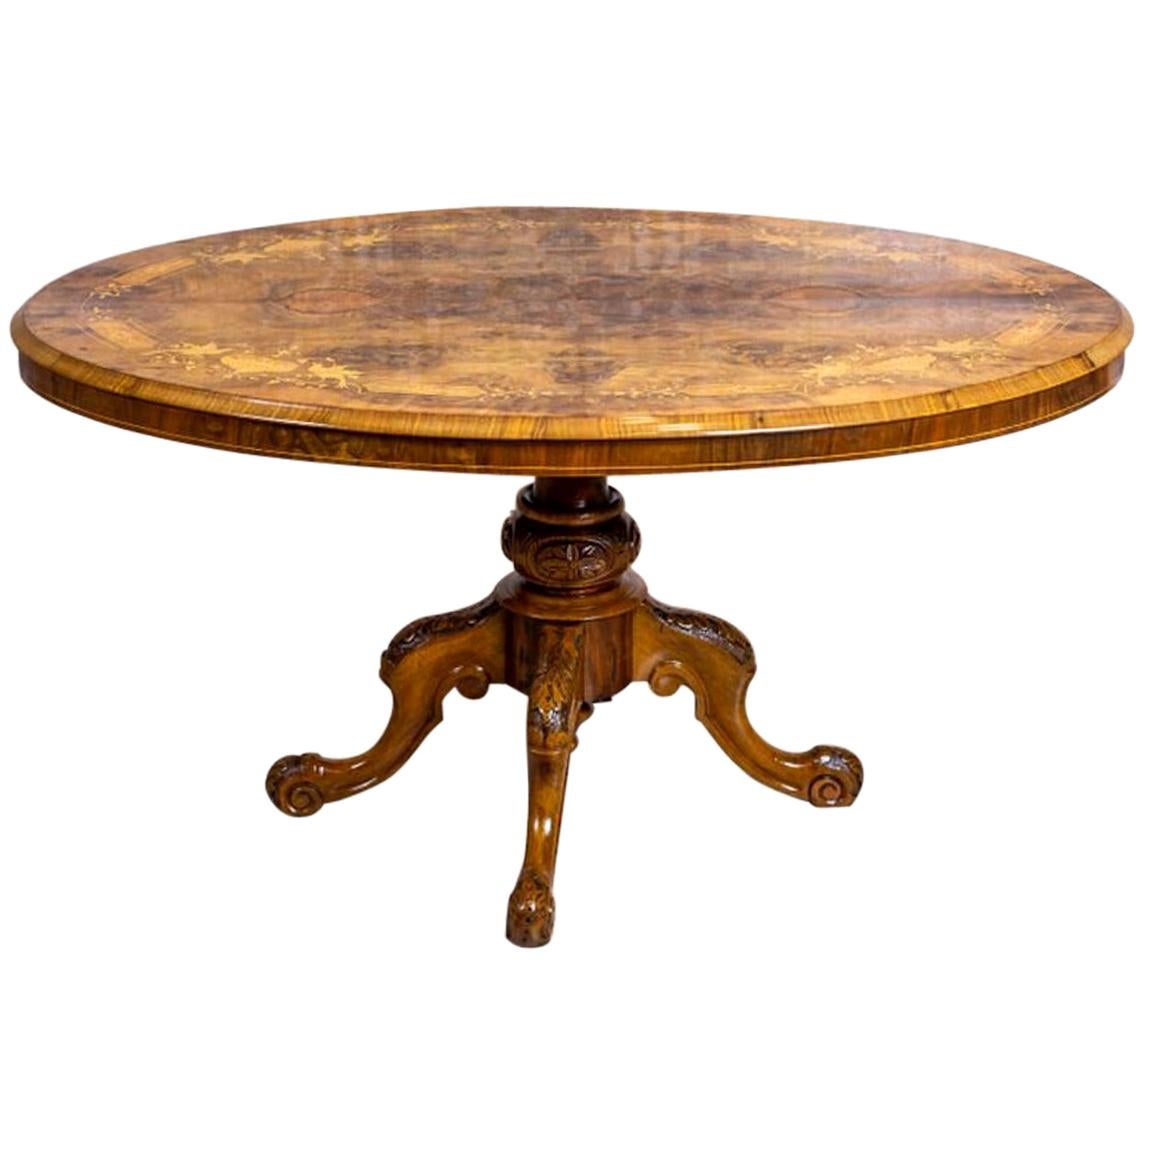 Ovaler viktorianischer Tisch aus dem 19. Jahrhundert